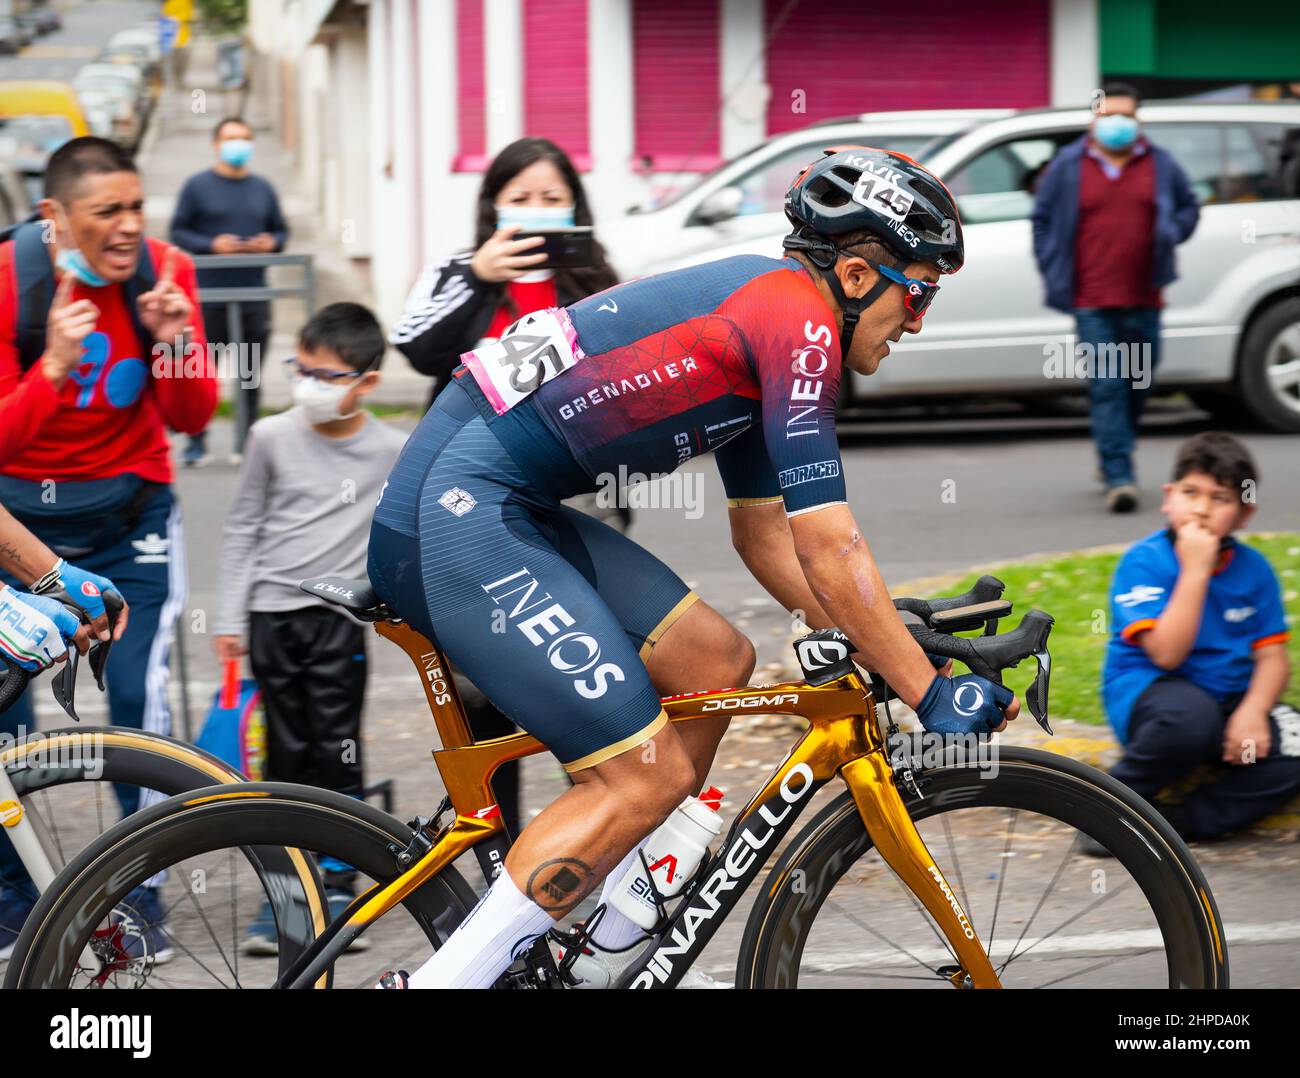 Richard Carapaz, ciclista ecuatoriano y medallista de oro en las olimpiadas de Tokio terminando segundo de la carrera de los hombres en bicicleta de oro en Ecuador, Quito, Ecuador. Foto de stock